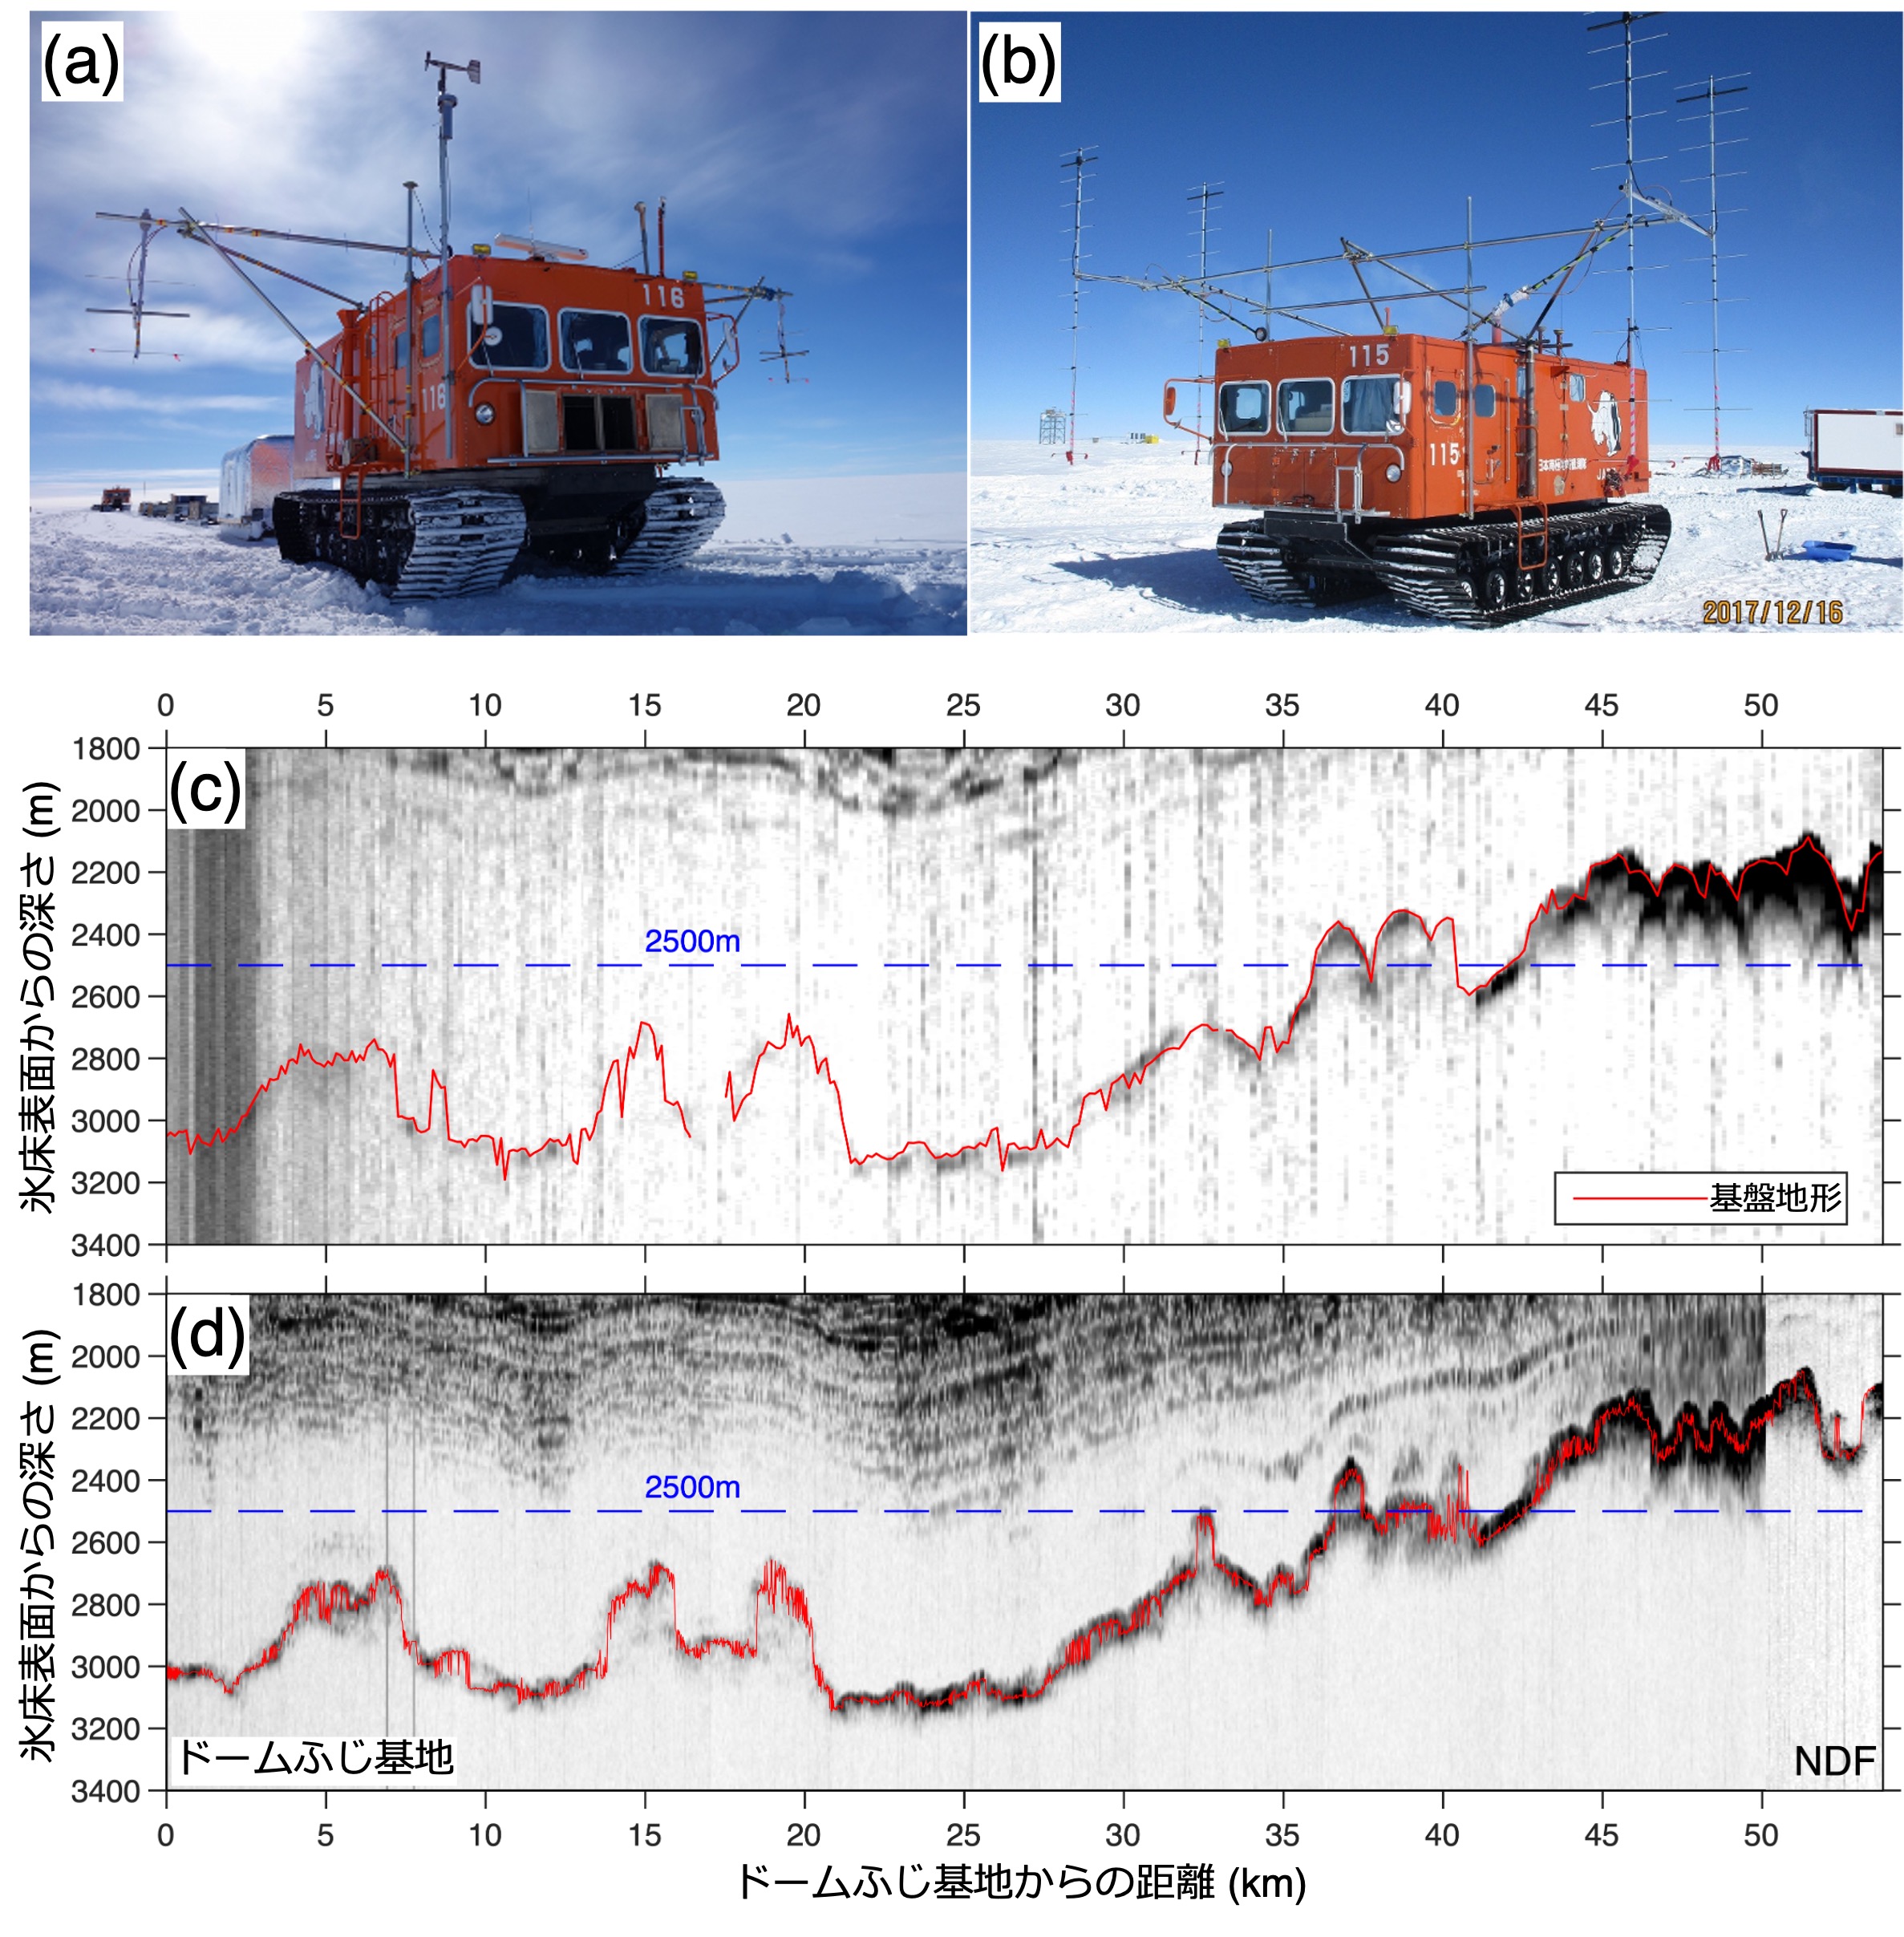 図3： （上段写真）氷床レーダアンテナを搭載した雪上車。国立極地研究所 藤田秀二教授撮影。（a）54次隊で使用した改良前のアンテナ、（b）59次隊で使用した、高い利得を持つ改良後のアンテナ。
（下段）ドームふじ基地とNDF観測拠点間の同一の場所で取得した、氷床深部のレーダエコー画像。（c）54次隊で改良前アンテナ（写真a）と、（d）59次で改良後アンテナ（写真b）を使用したときのそれぞれの観測結果。赤線は自動で抽出した大陸基盤地形。の画像